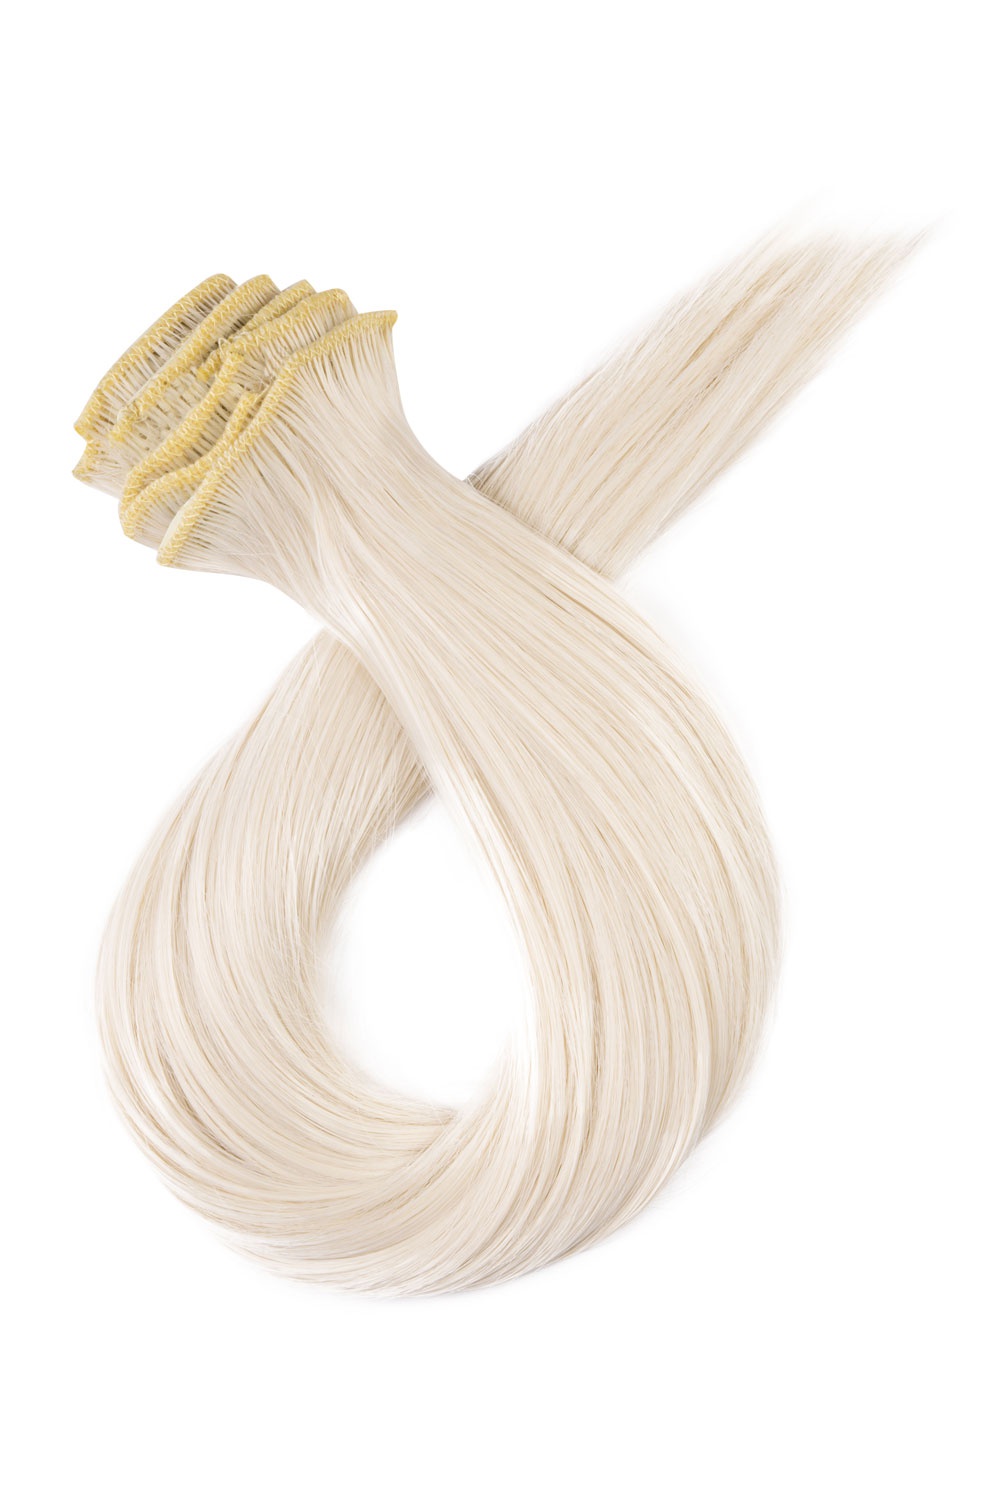 Platinové blond clip in vlasy, 50cm, 150g, farba 60